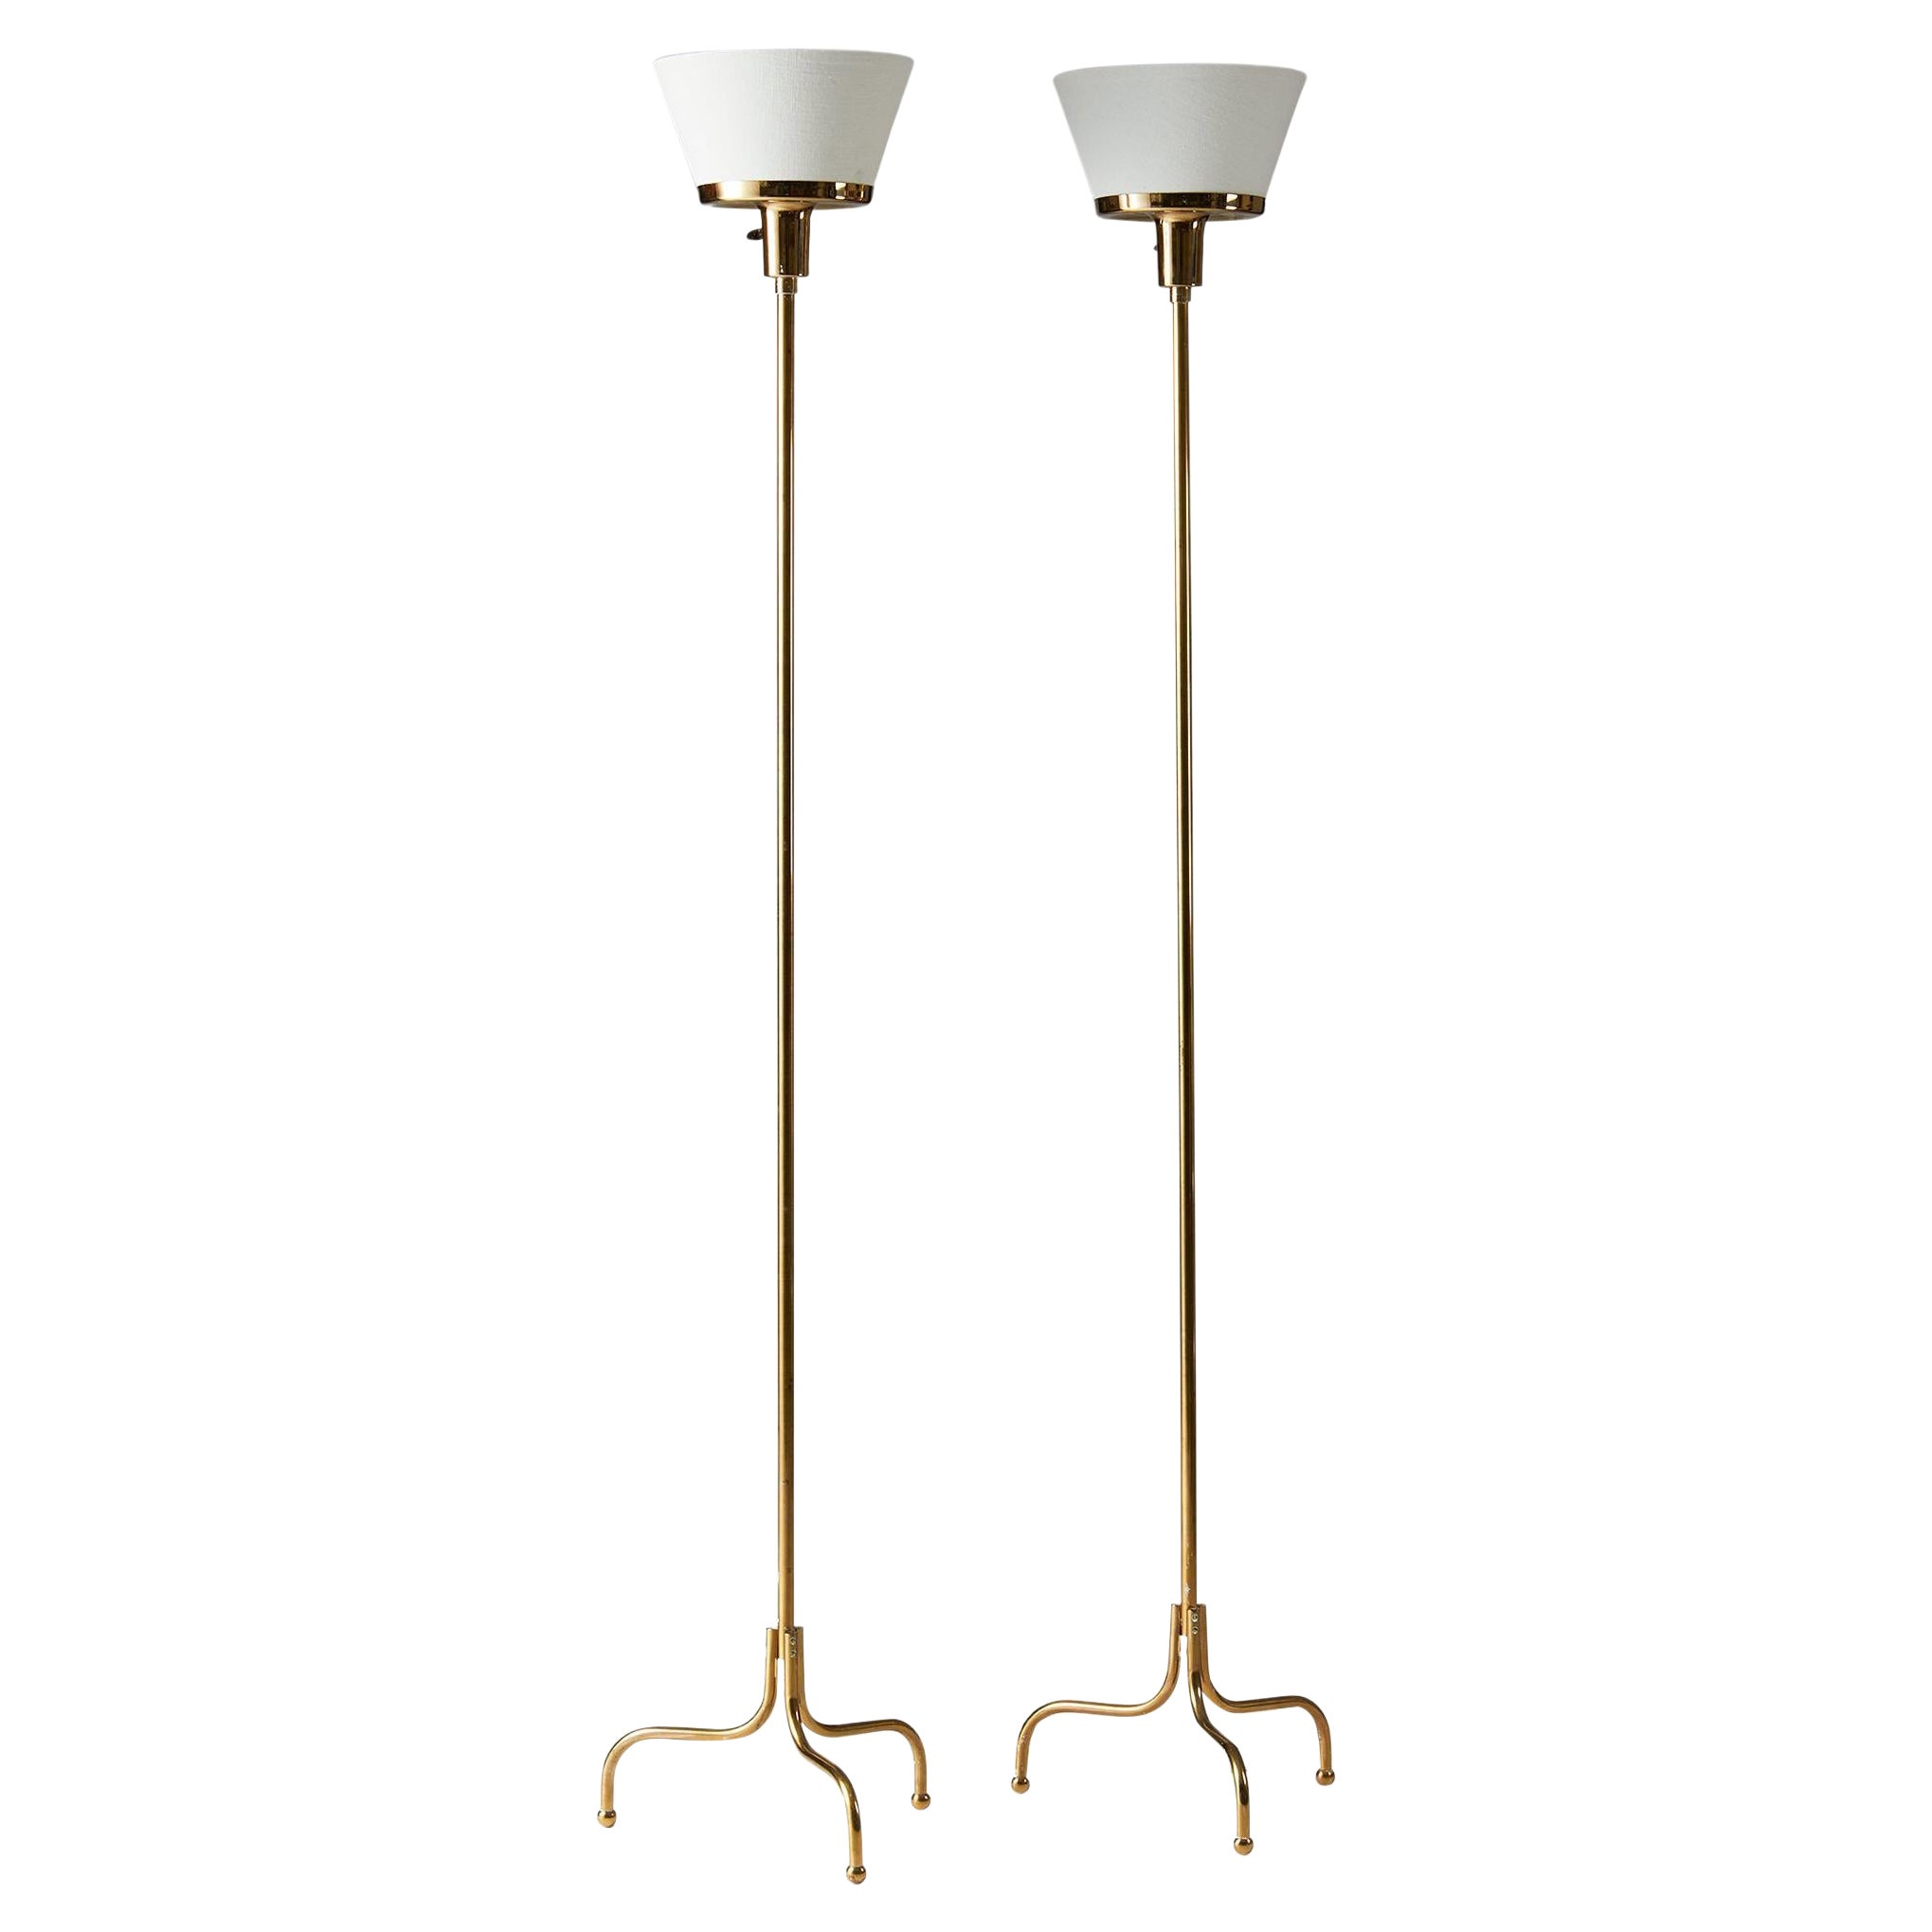 Pair of Floor Lamps ‘Model 2424’ Designed by Josef Frank for Svenskt Tenn